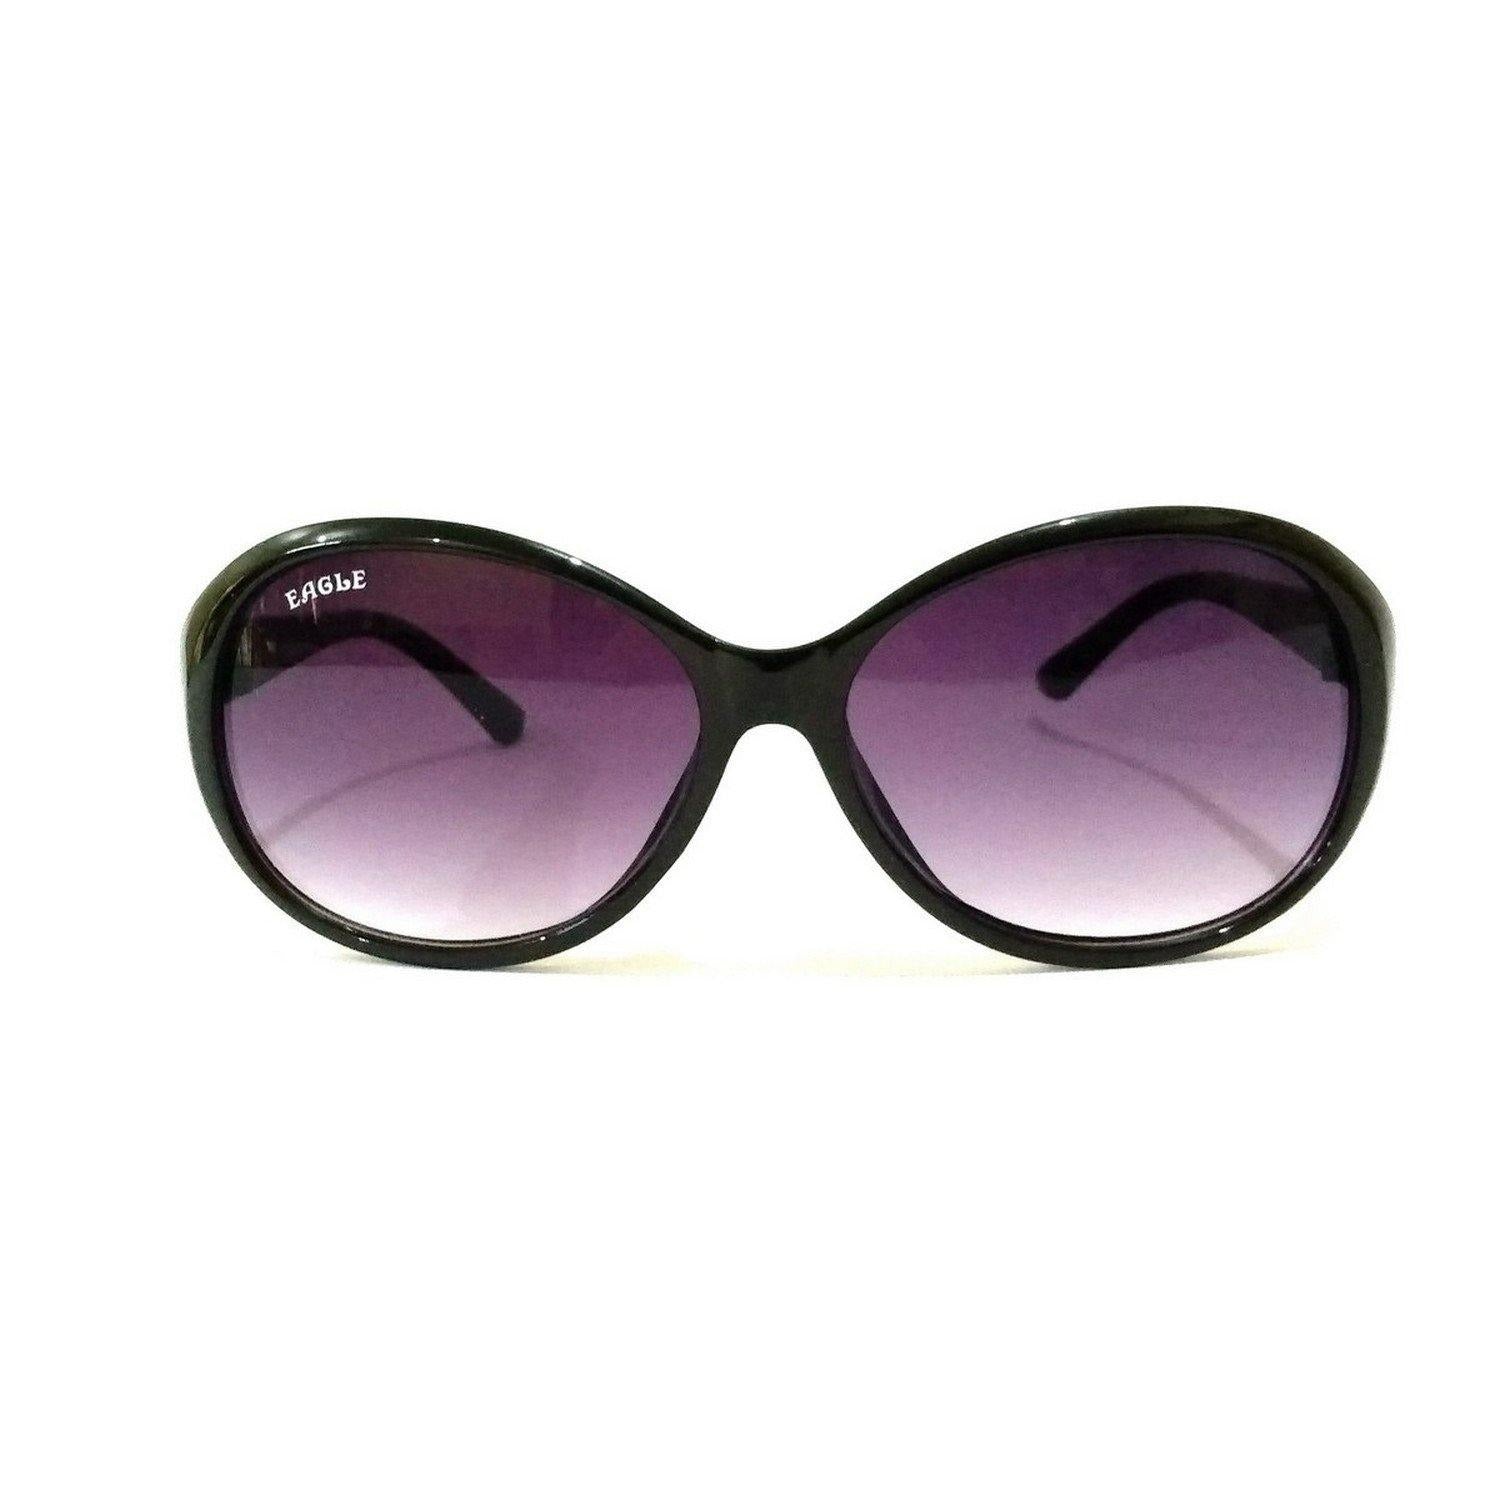 Black Sunglasses for Women EA7553BK - Glasses India Online